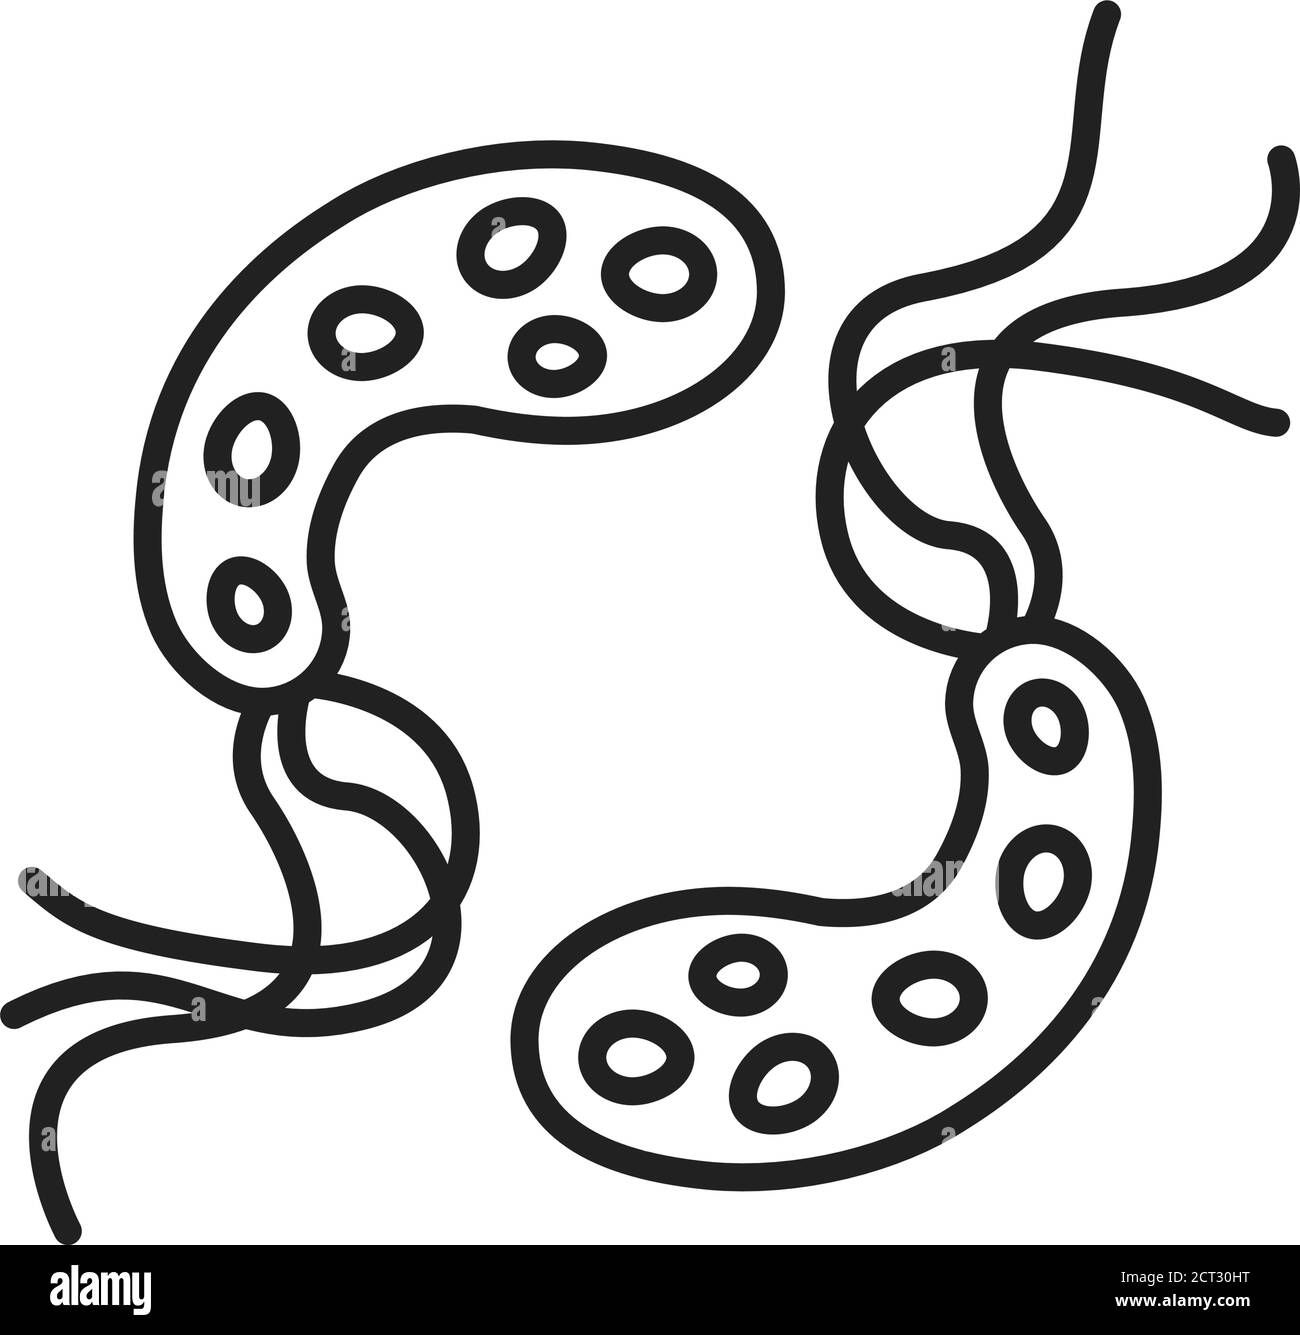 Bakterien Cholera schwarze Linie Symbol. Wasserbasierte mikroskopische Keime verursachen Krankheiten Konzept. Piktogramm für Web, mobile App, Promo. UI-UX-Designelement Stock Vektor